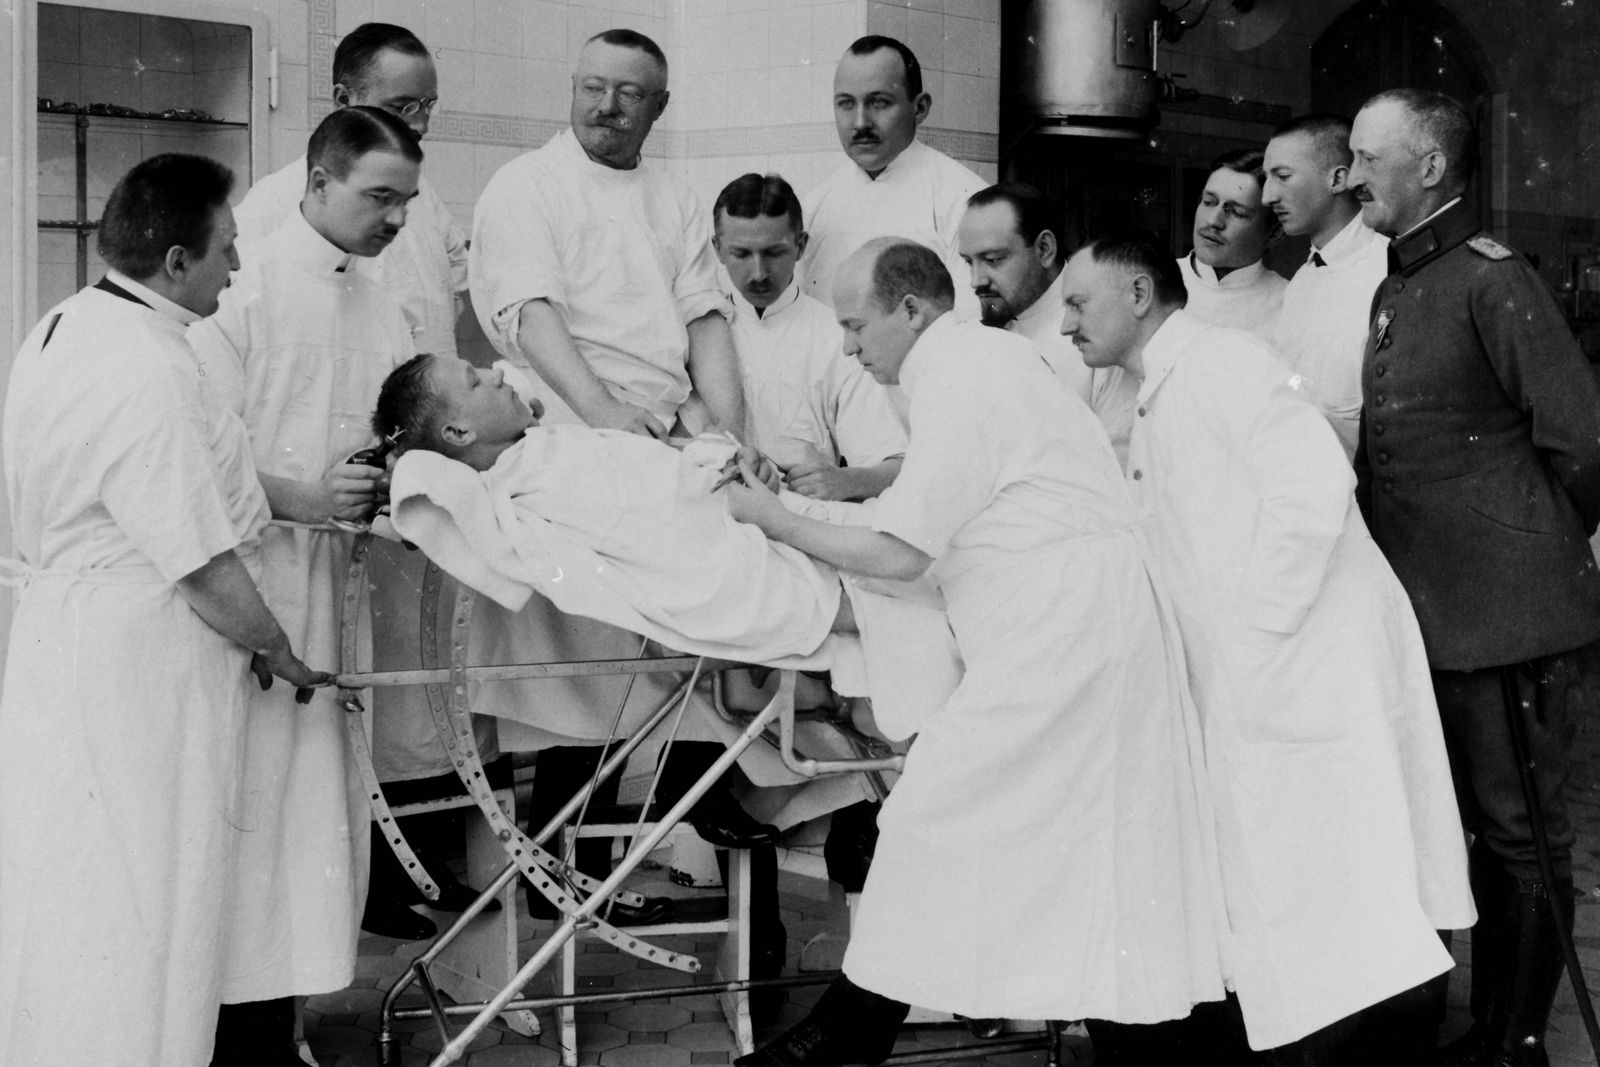 Demonstration einer Blinddarmoperation durch Professor D. Josef Rotter (4. von links), um 1921